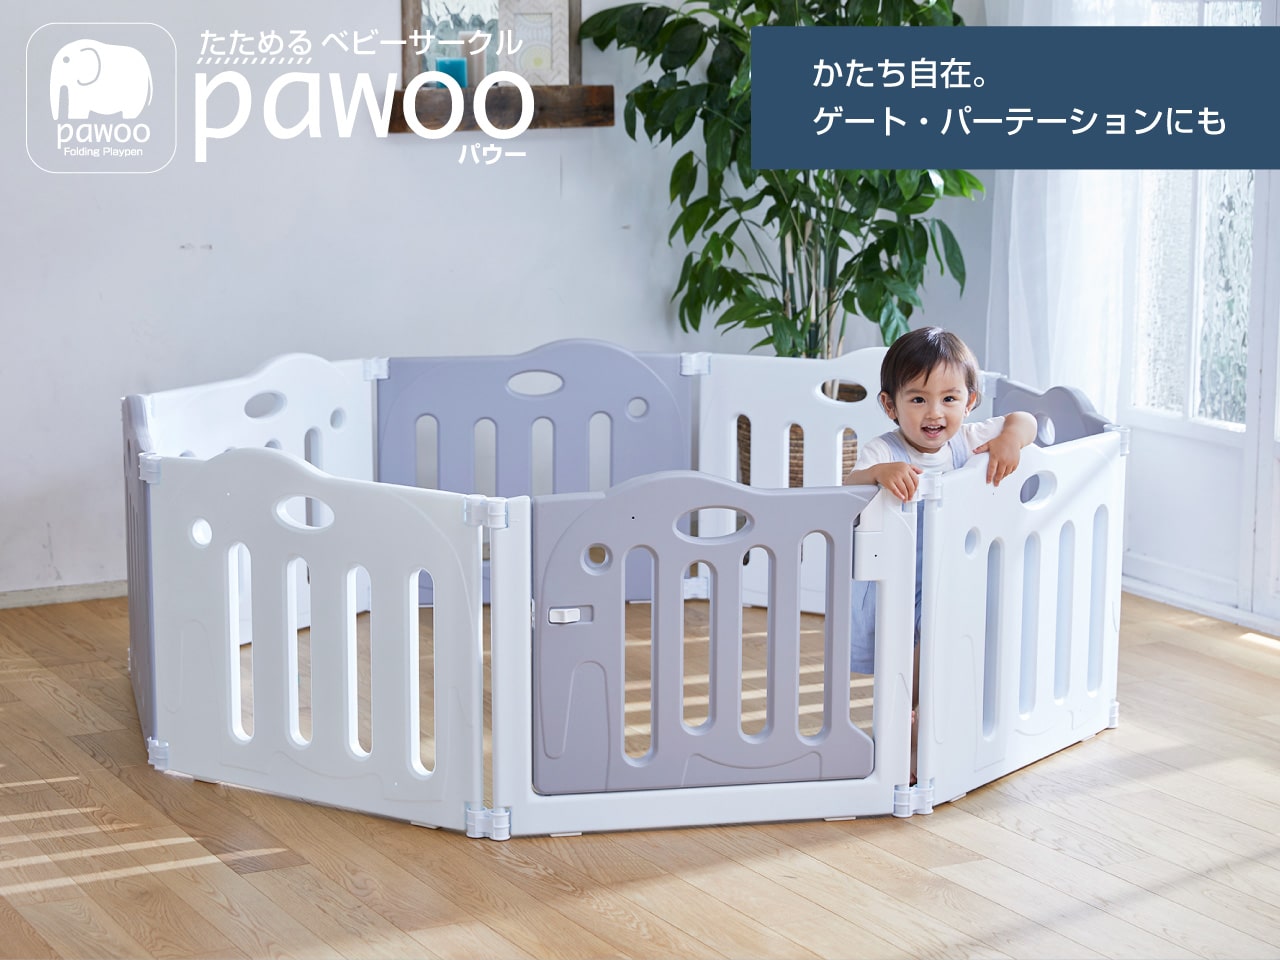 はすべて たためるベビーサークル 日本育児 pawoo BWctr-m66079602802 します